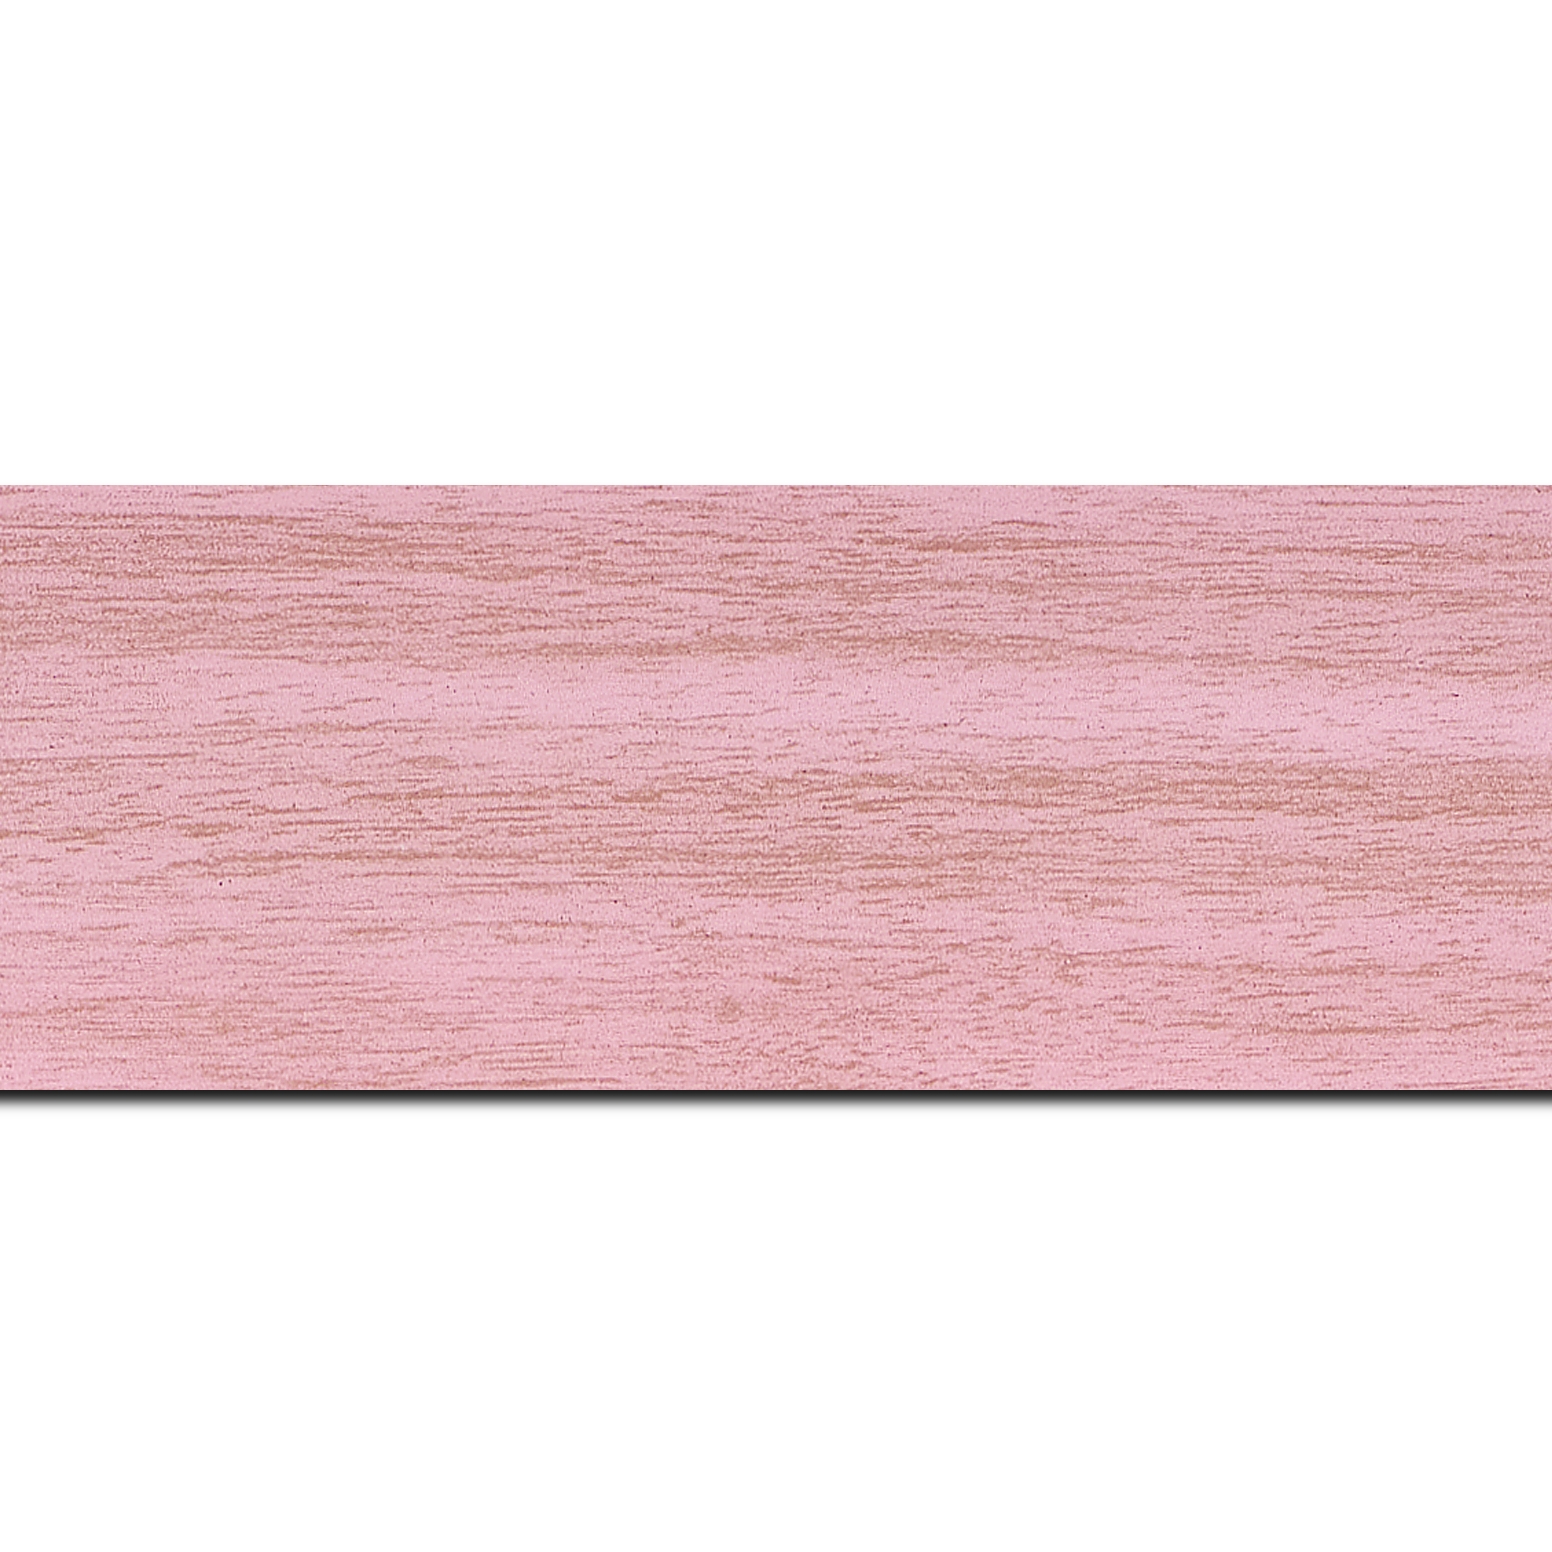 Pack par 12m, bois profil plat largeur 6cm rose ancien satiné effet veiné ,chant extérieur du cadre de couleur noire(longueur baguette pouvant varier entre 2.40m et 3m selon arrivage des bois)